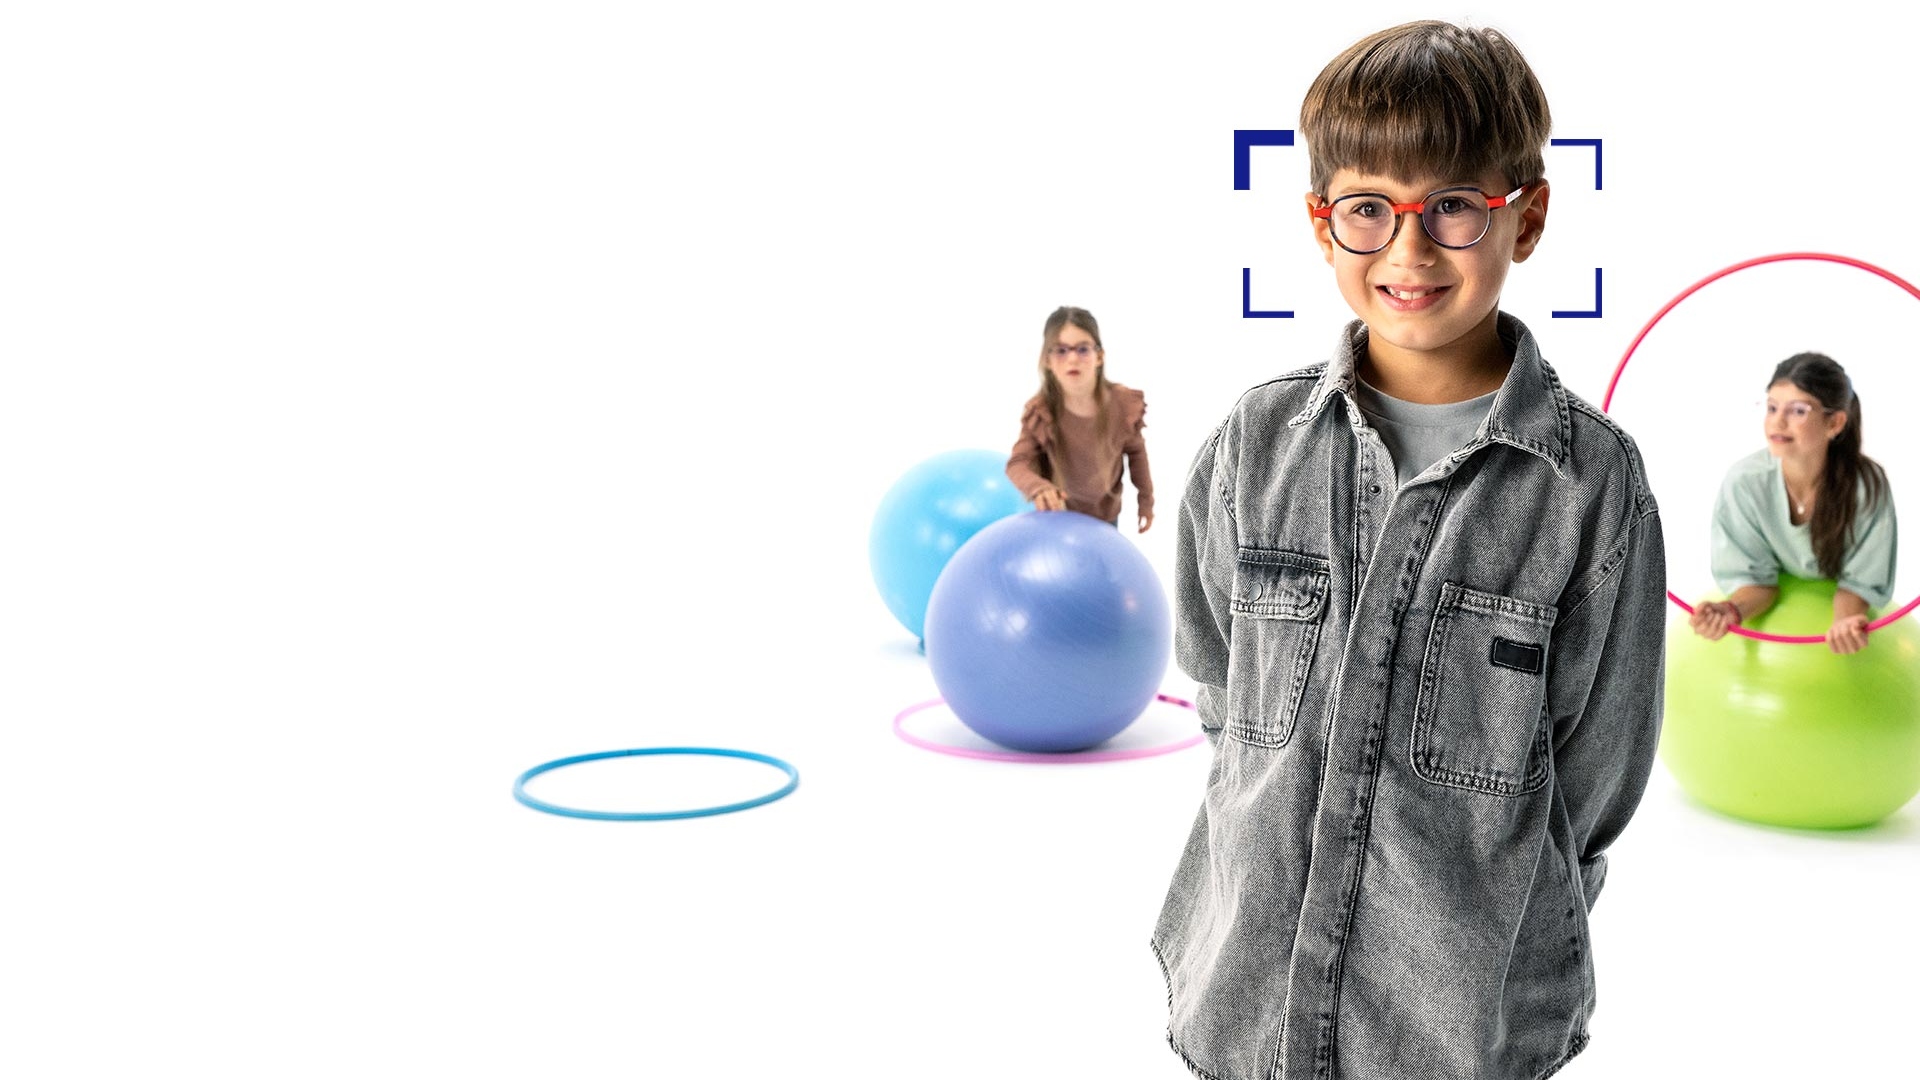 Em primeiro plano vemos um menino de cabelo castanho a usar óculos redondos com lentes ZEISS MyoCare e a sorrir para a câmara. Em segundo plano encontram-se duas meninas a usar lentes ZEISS MyoCare e a brincar com arcos e bolas de ginástica.